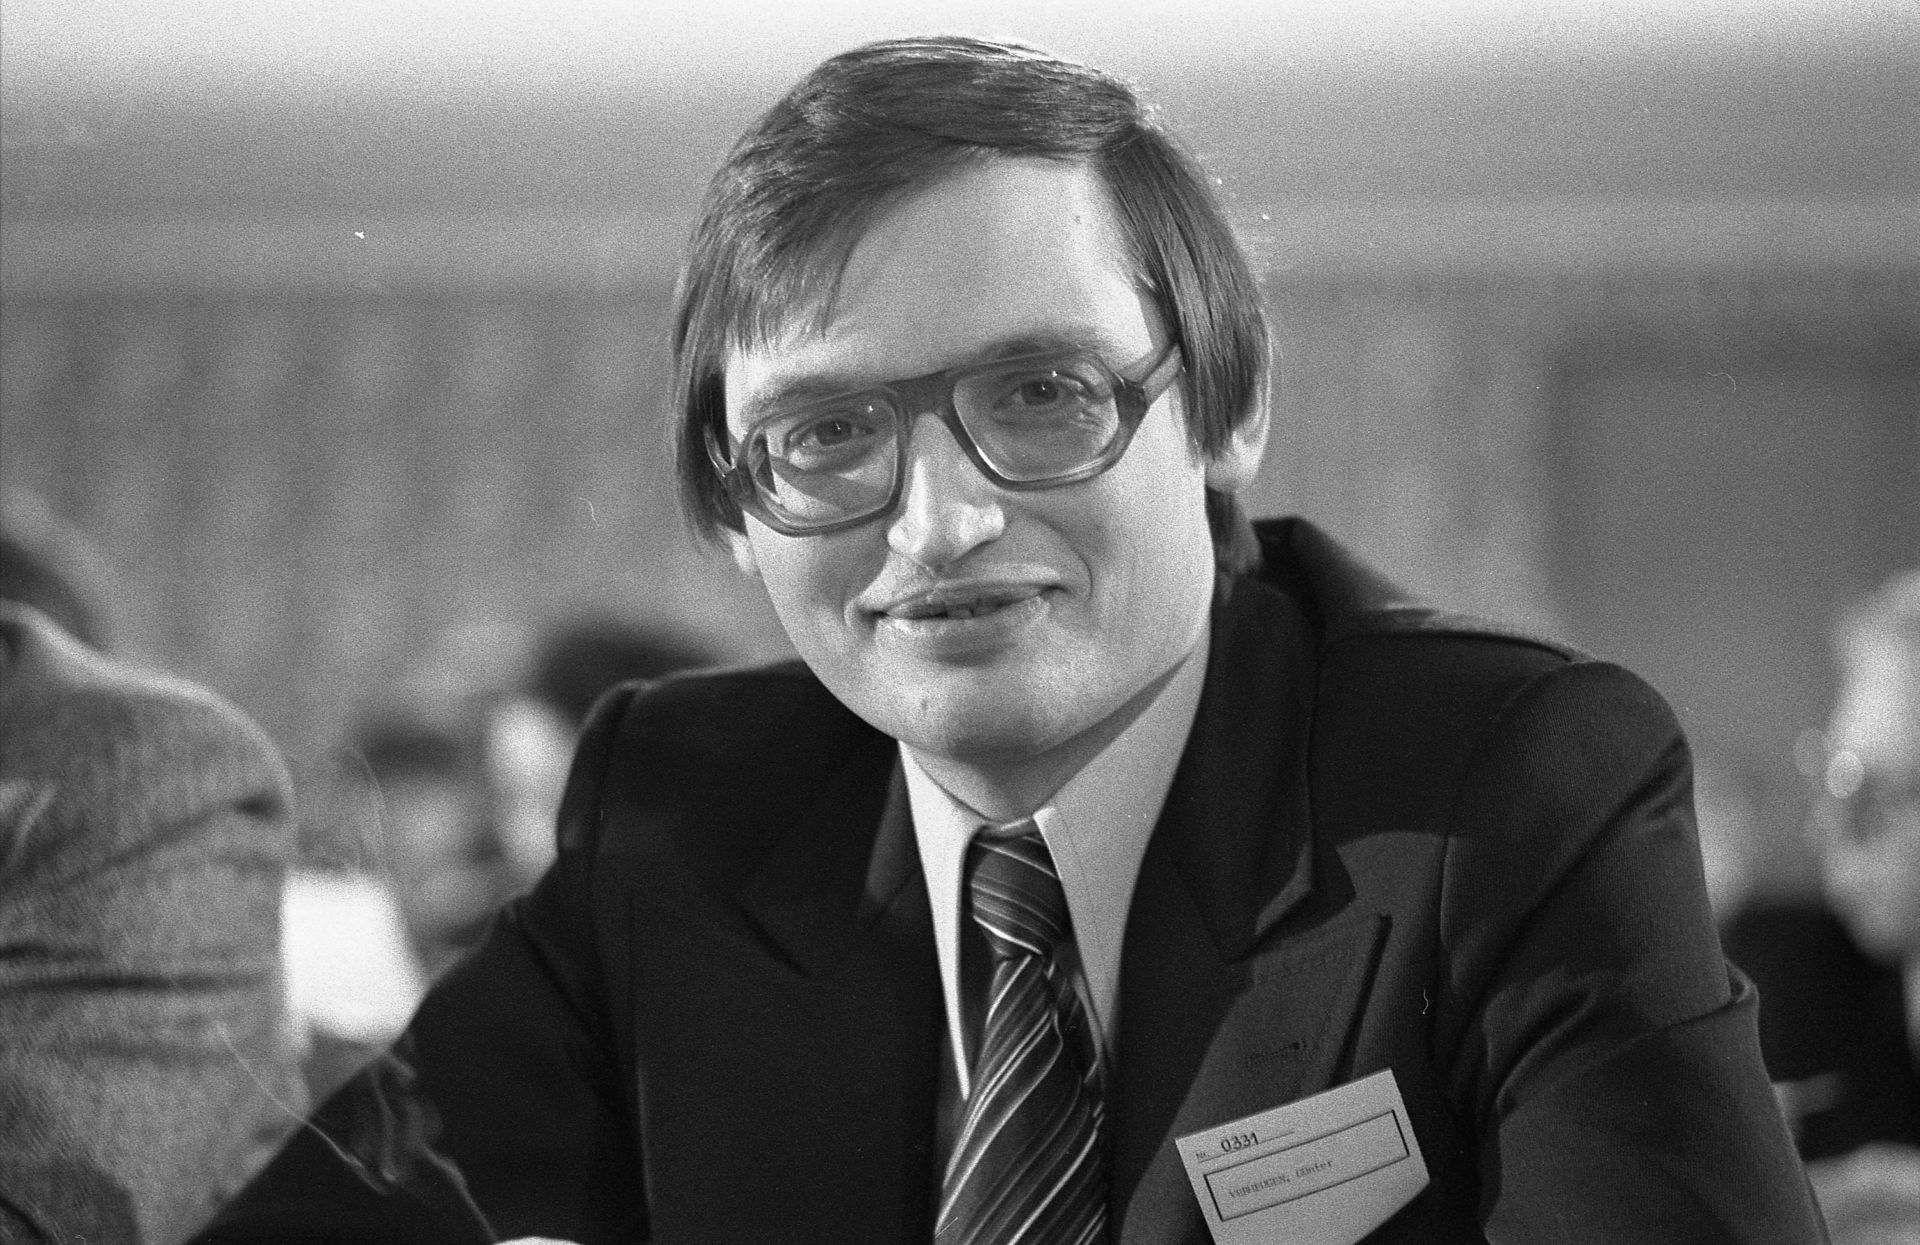 Fotografie des Politikers Günter Verheugen auf dem 27. Bundesparteitag der F.D.P in Frankfurt am Main, 1976.